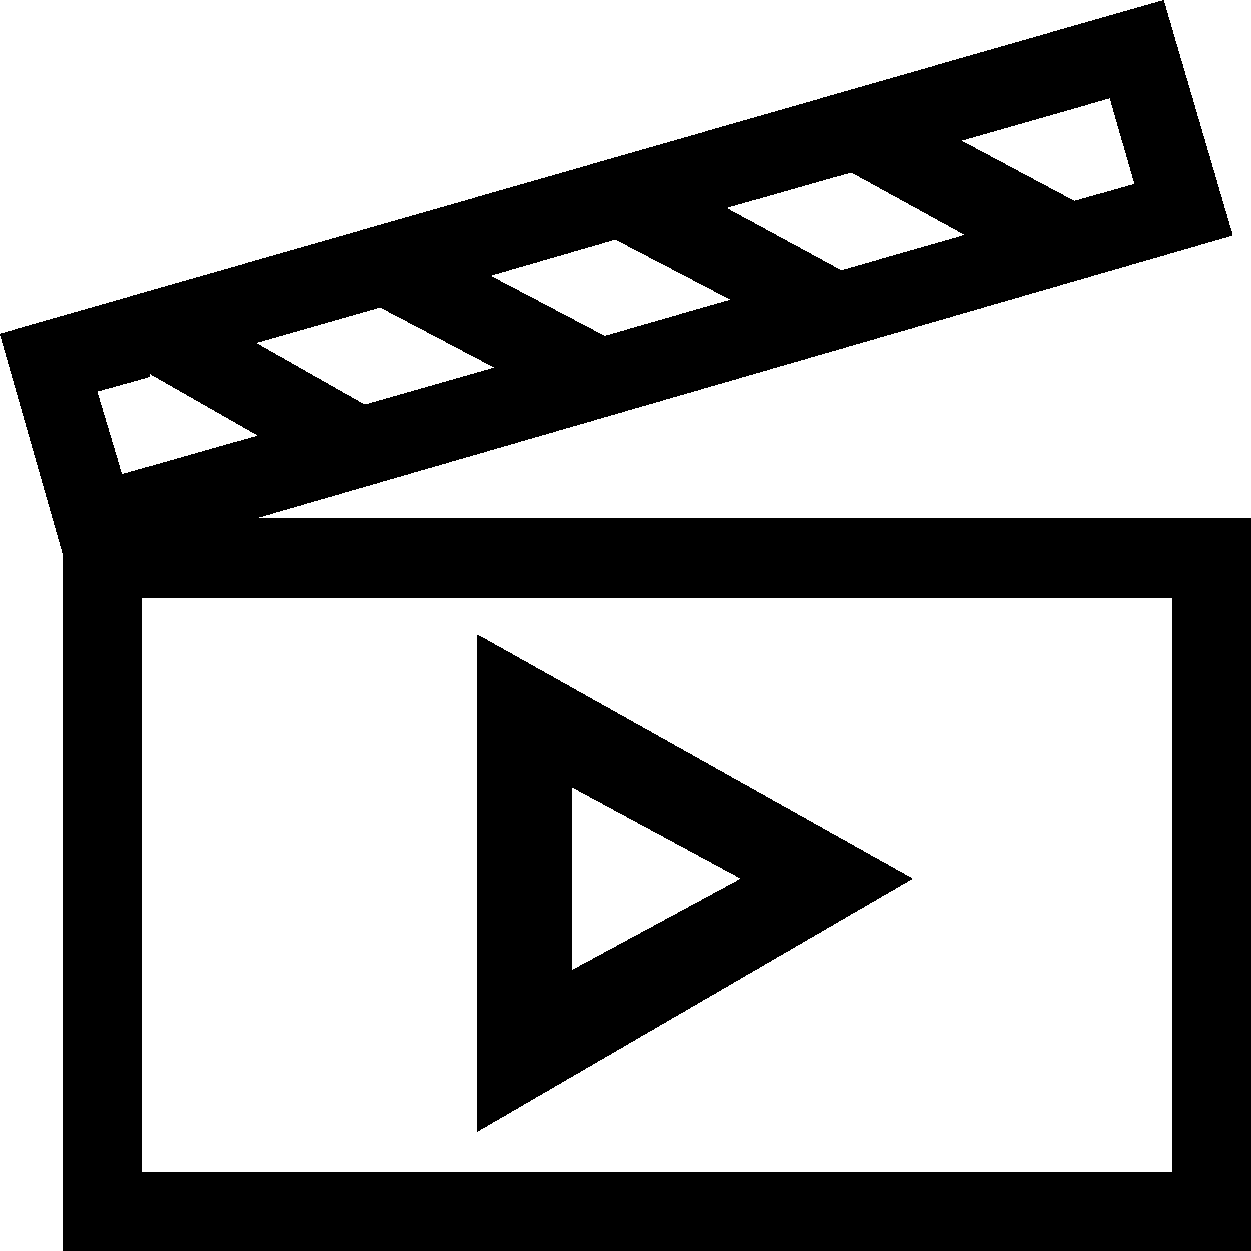 klaps - odtwarzanie filmów